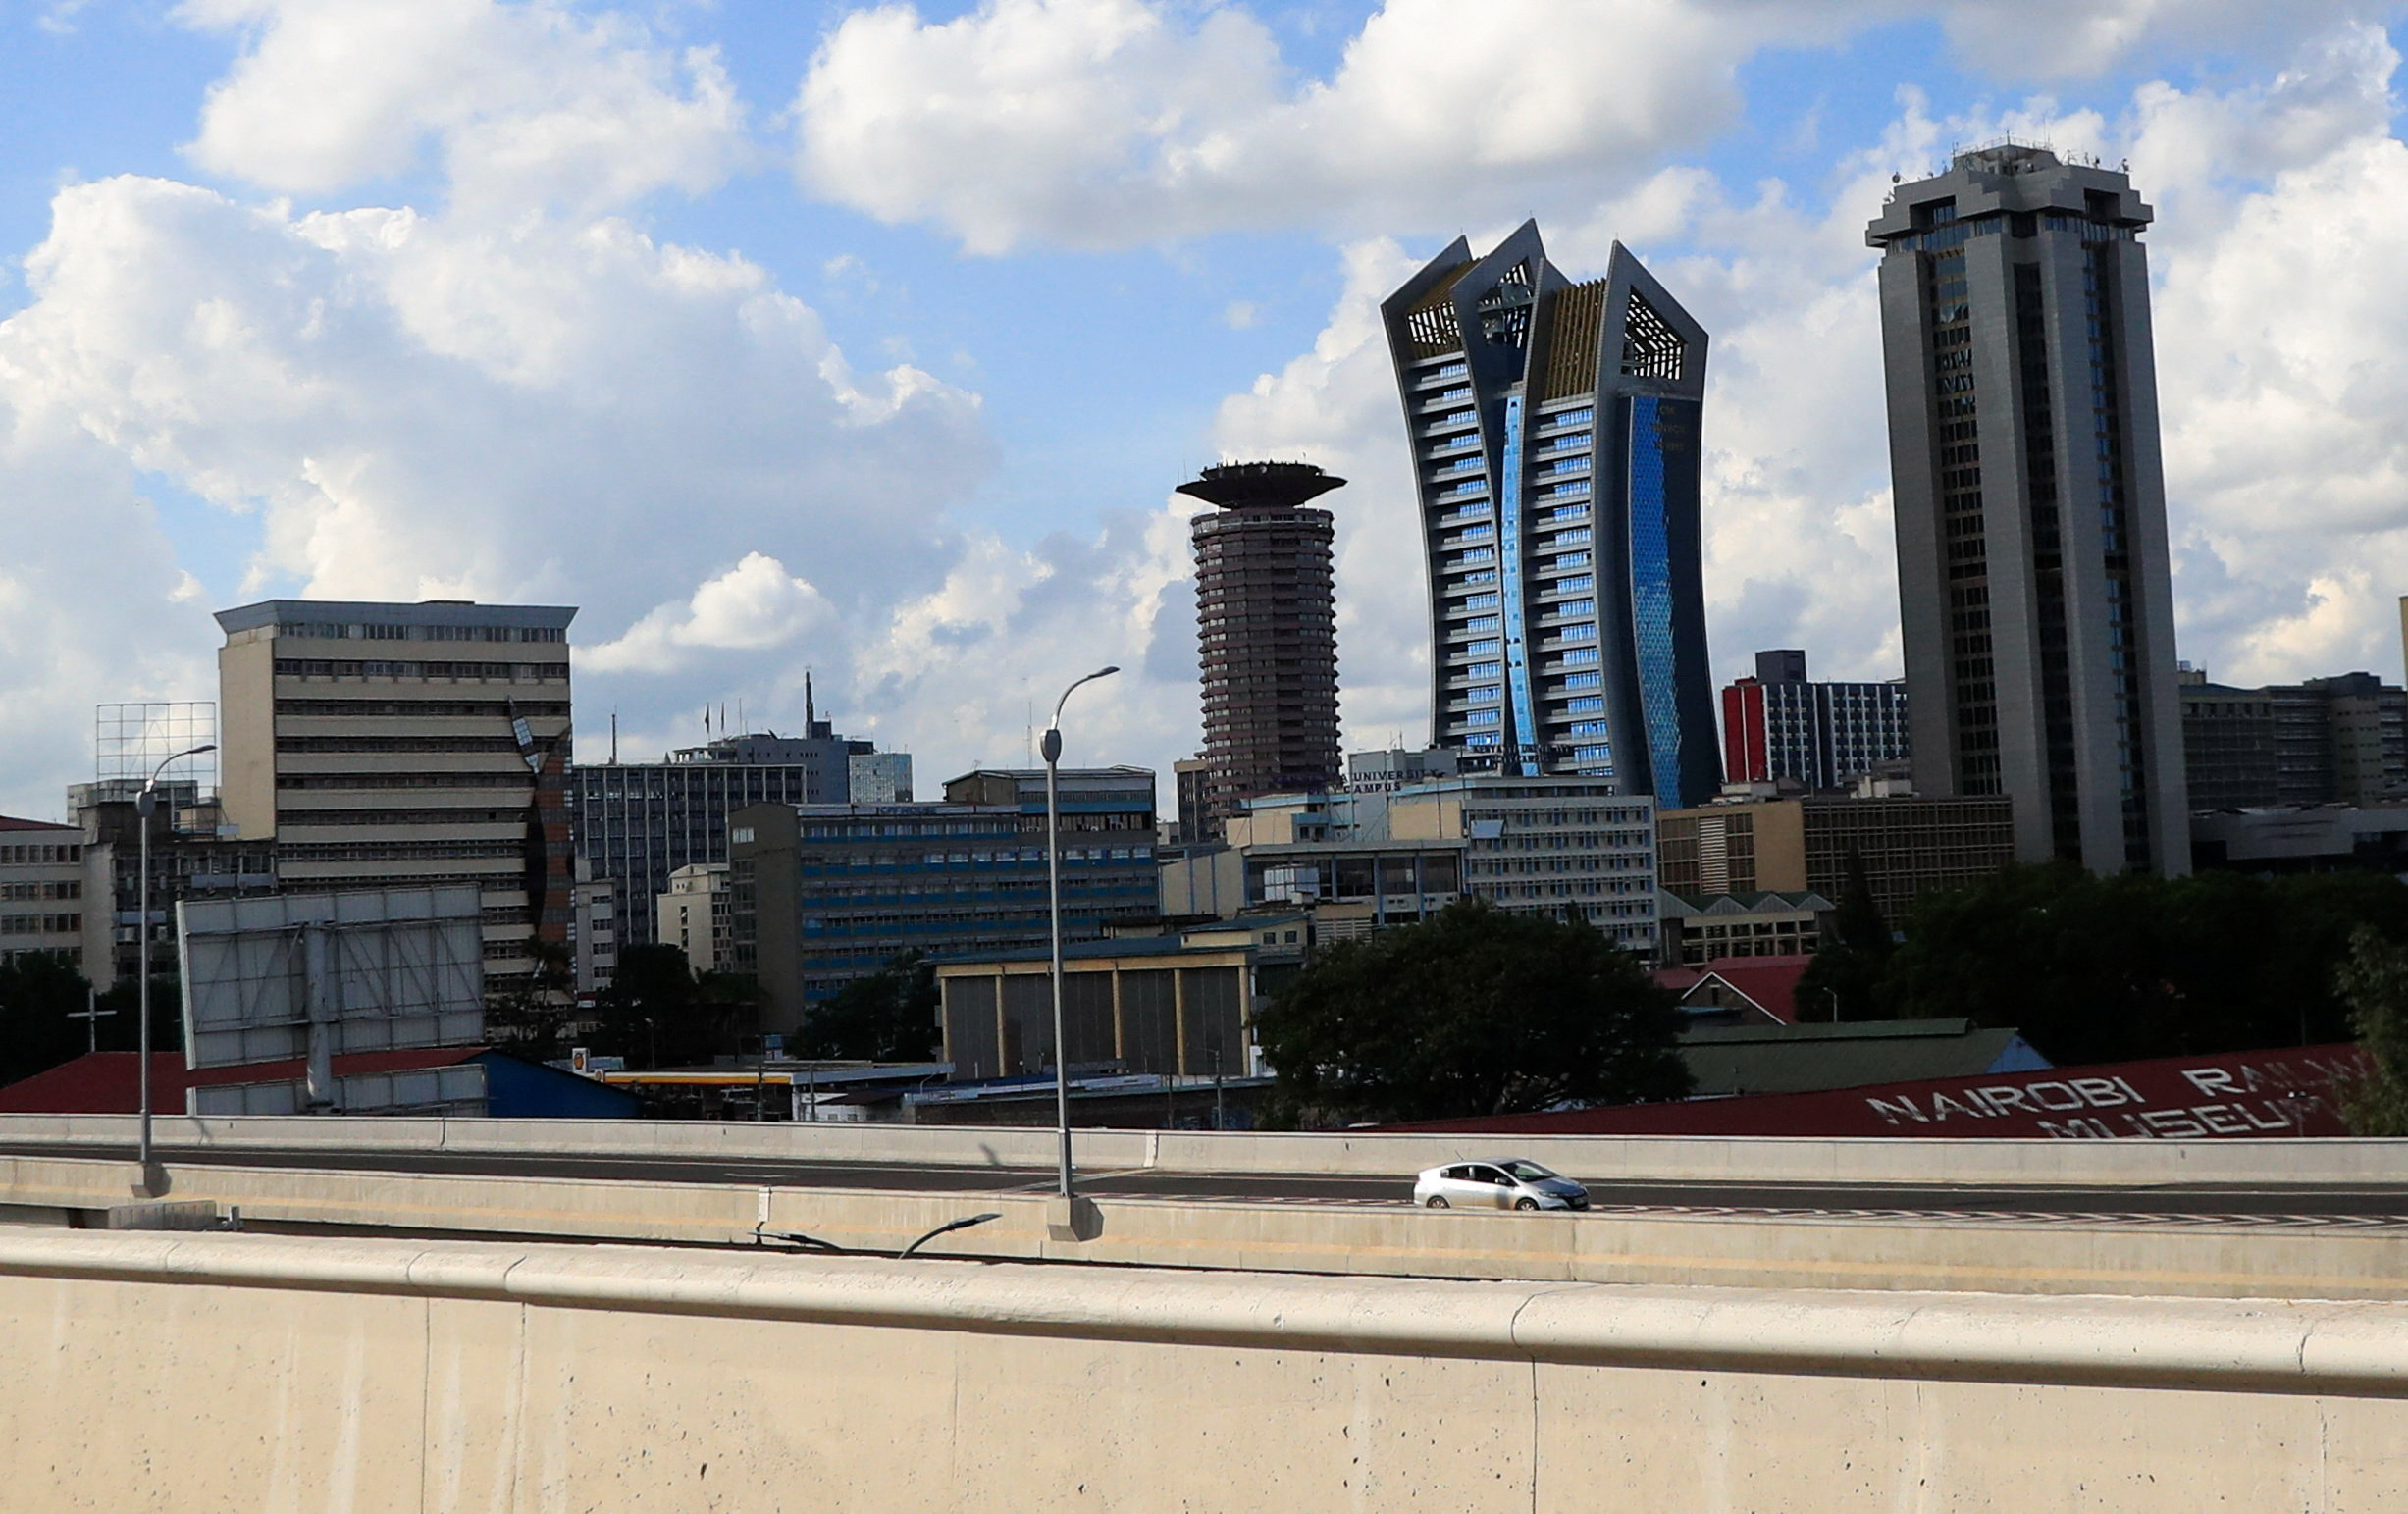 Một góc nhìn cho thấy cảnh quan thành phố trên Đường cao tốc Nairobi do Tổng công ty Cầu đường Trung Quốc thực hiện dọc theo đường cao tốc Uhuru ở Nairobi